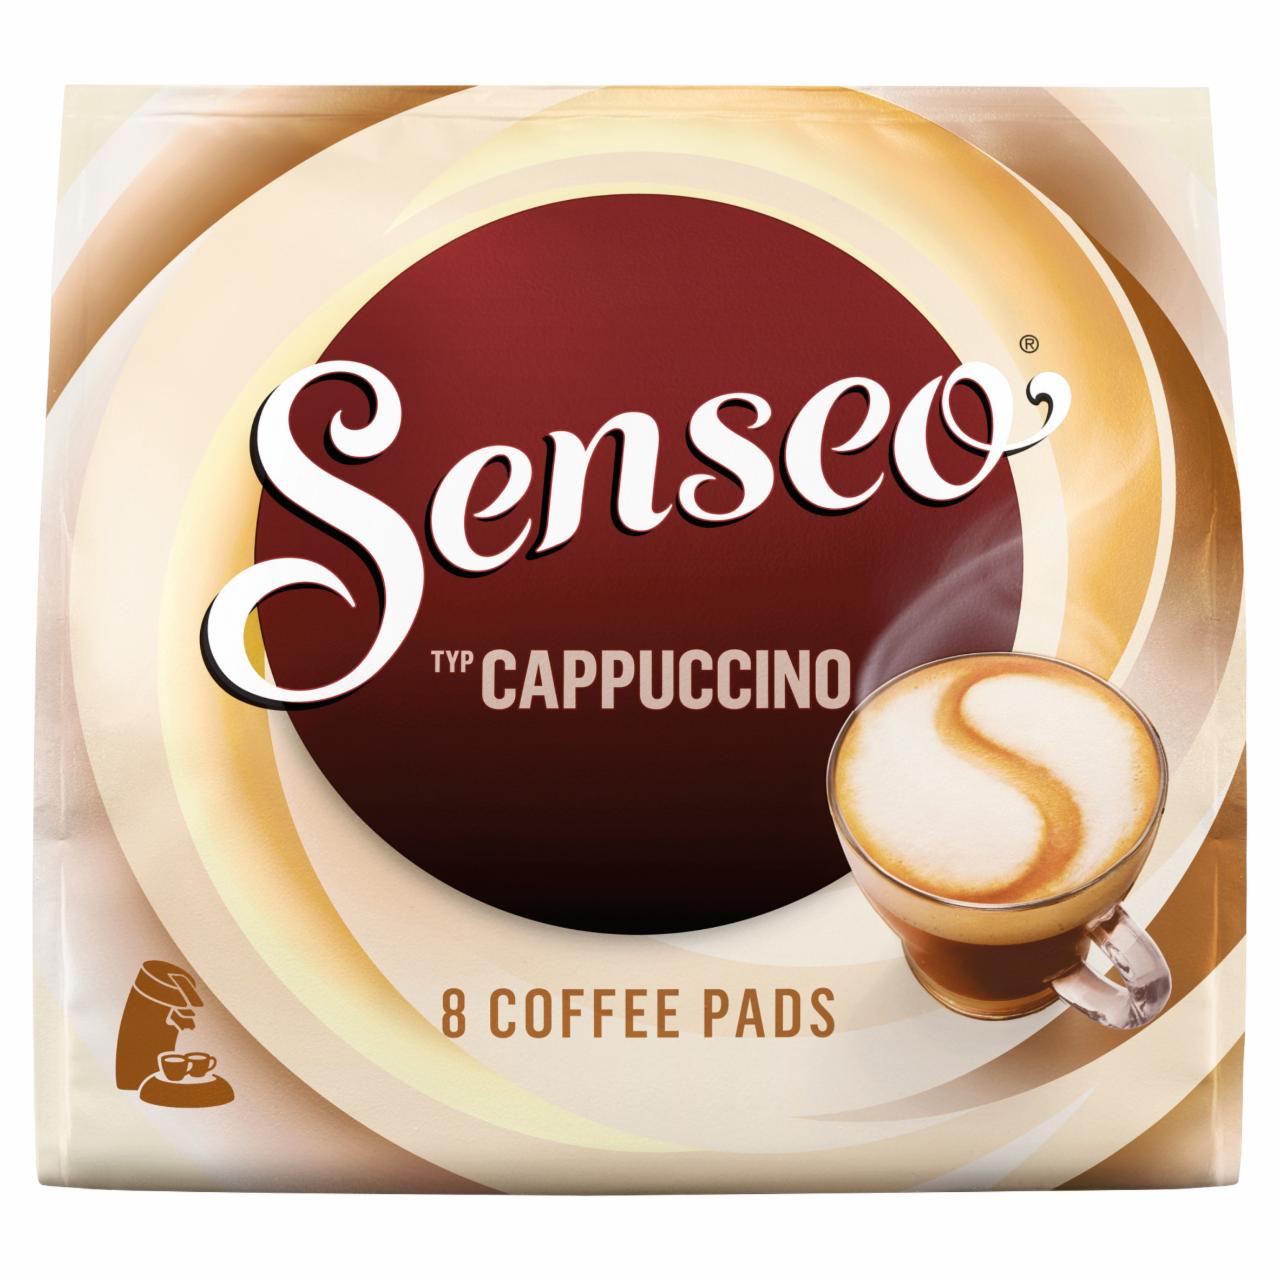 Képek - Senseo Cappuccino instant kávé kávékrémesítővel, cukorral egyadagos, párnás kiszerelésben 8 db 92 g